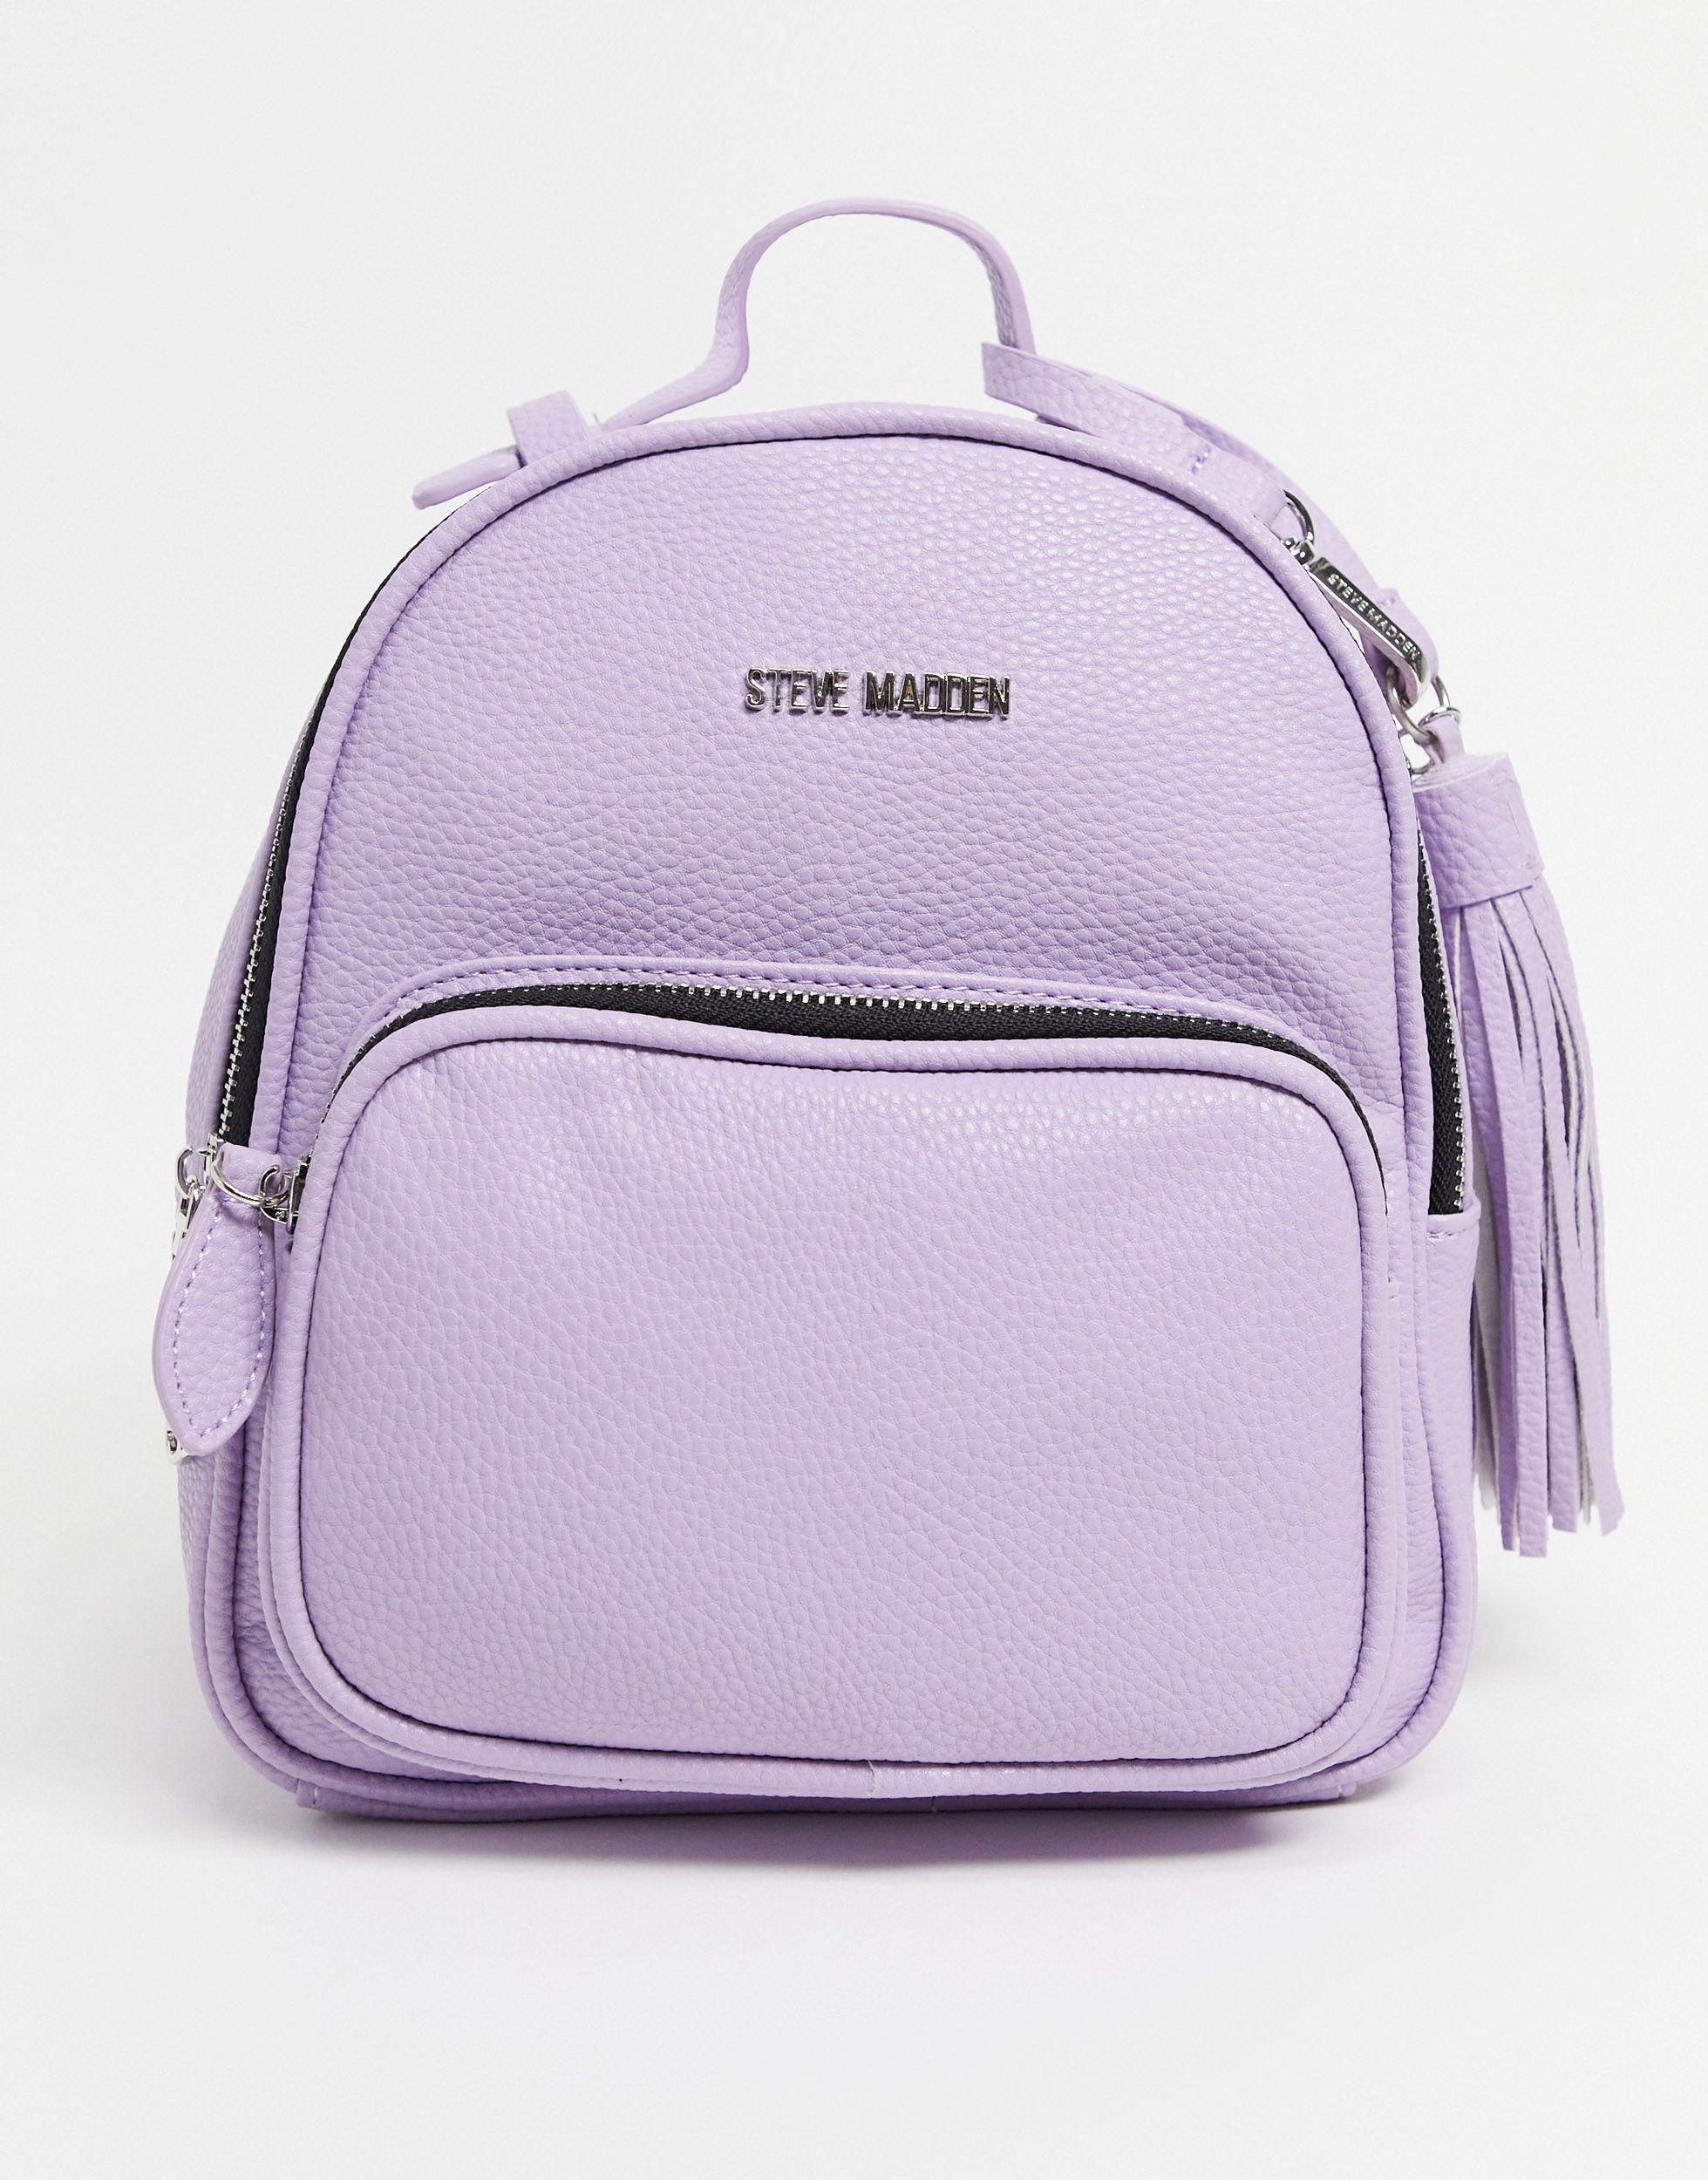 Steve Madden Logo Backpack in Purple | Lyst Australia